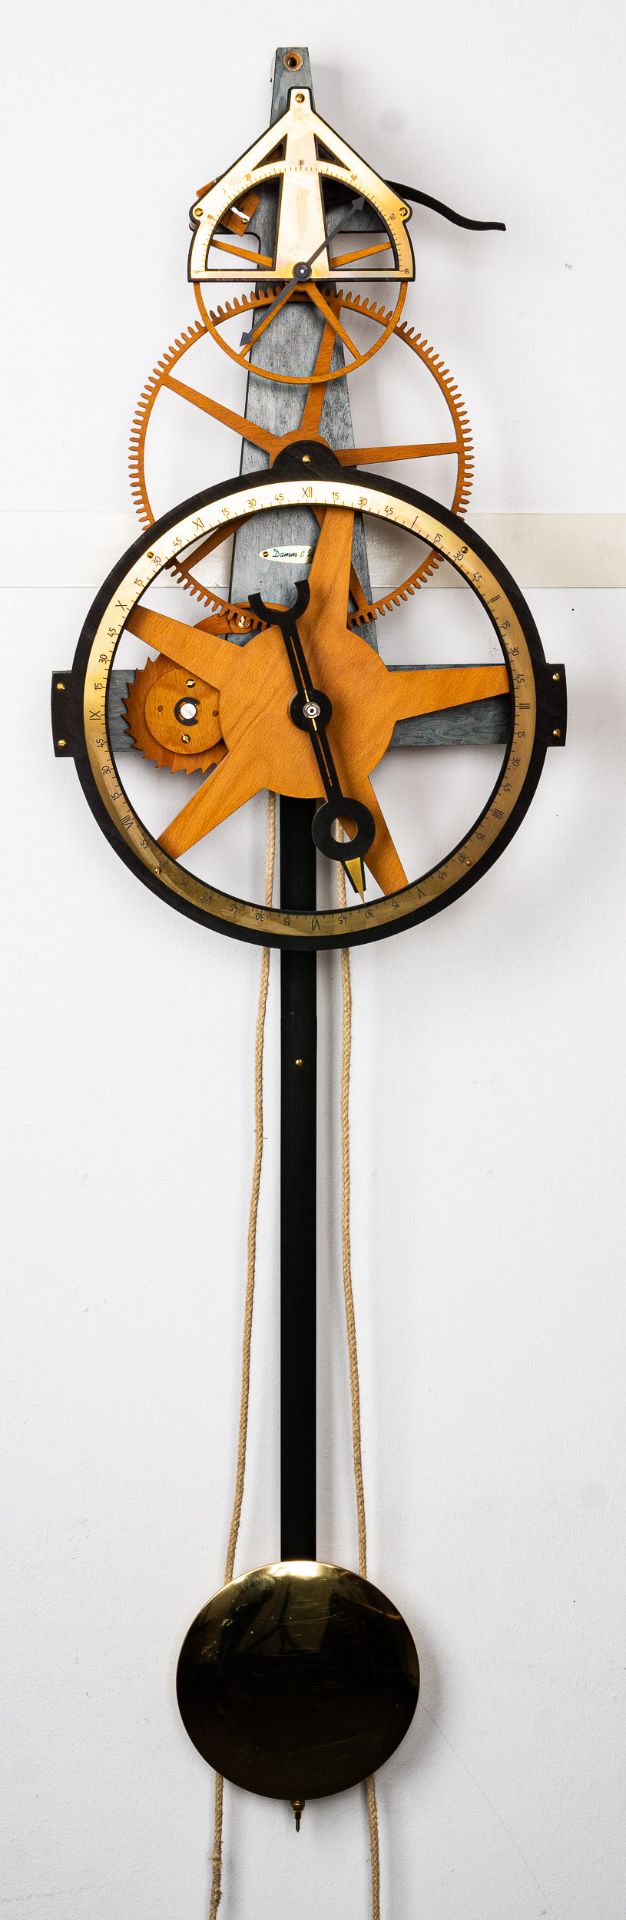 Hölzerne Wanduhr, 2 gewichtiges hölzernes Uhrwerk der Marke "Damm & Wolff", rüc